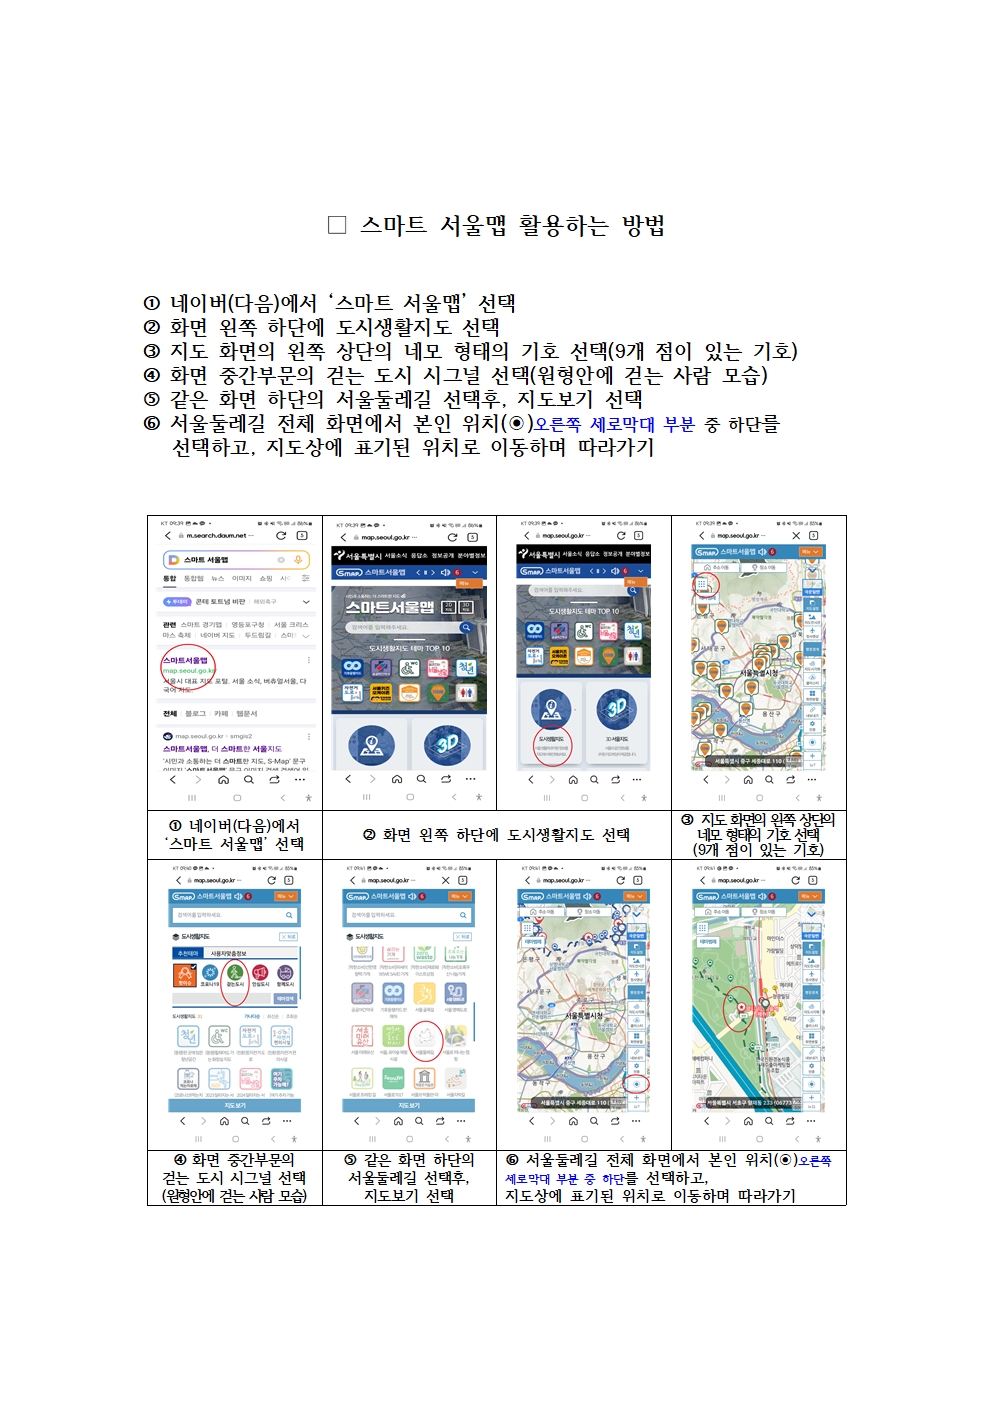 스마트 서울맵 에서 서울둘레길 활용